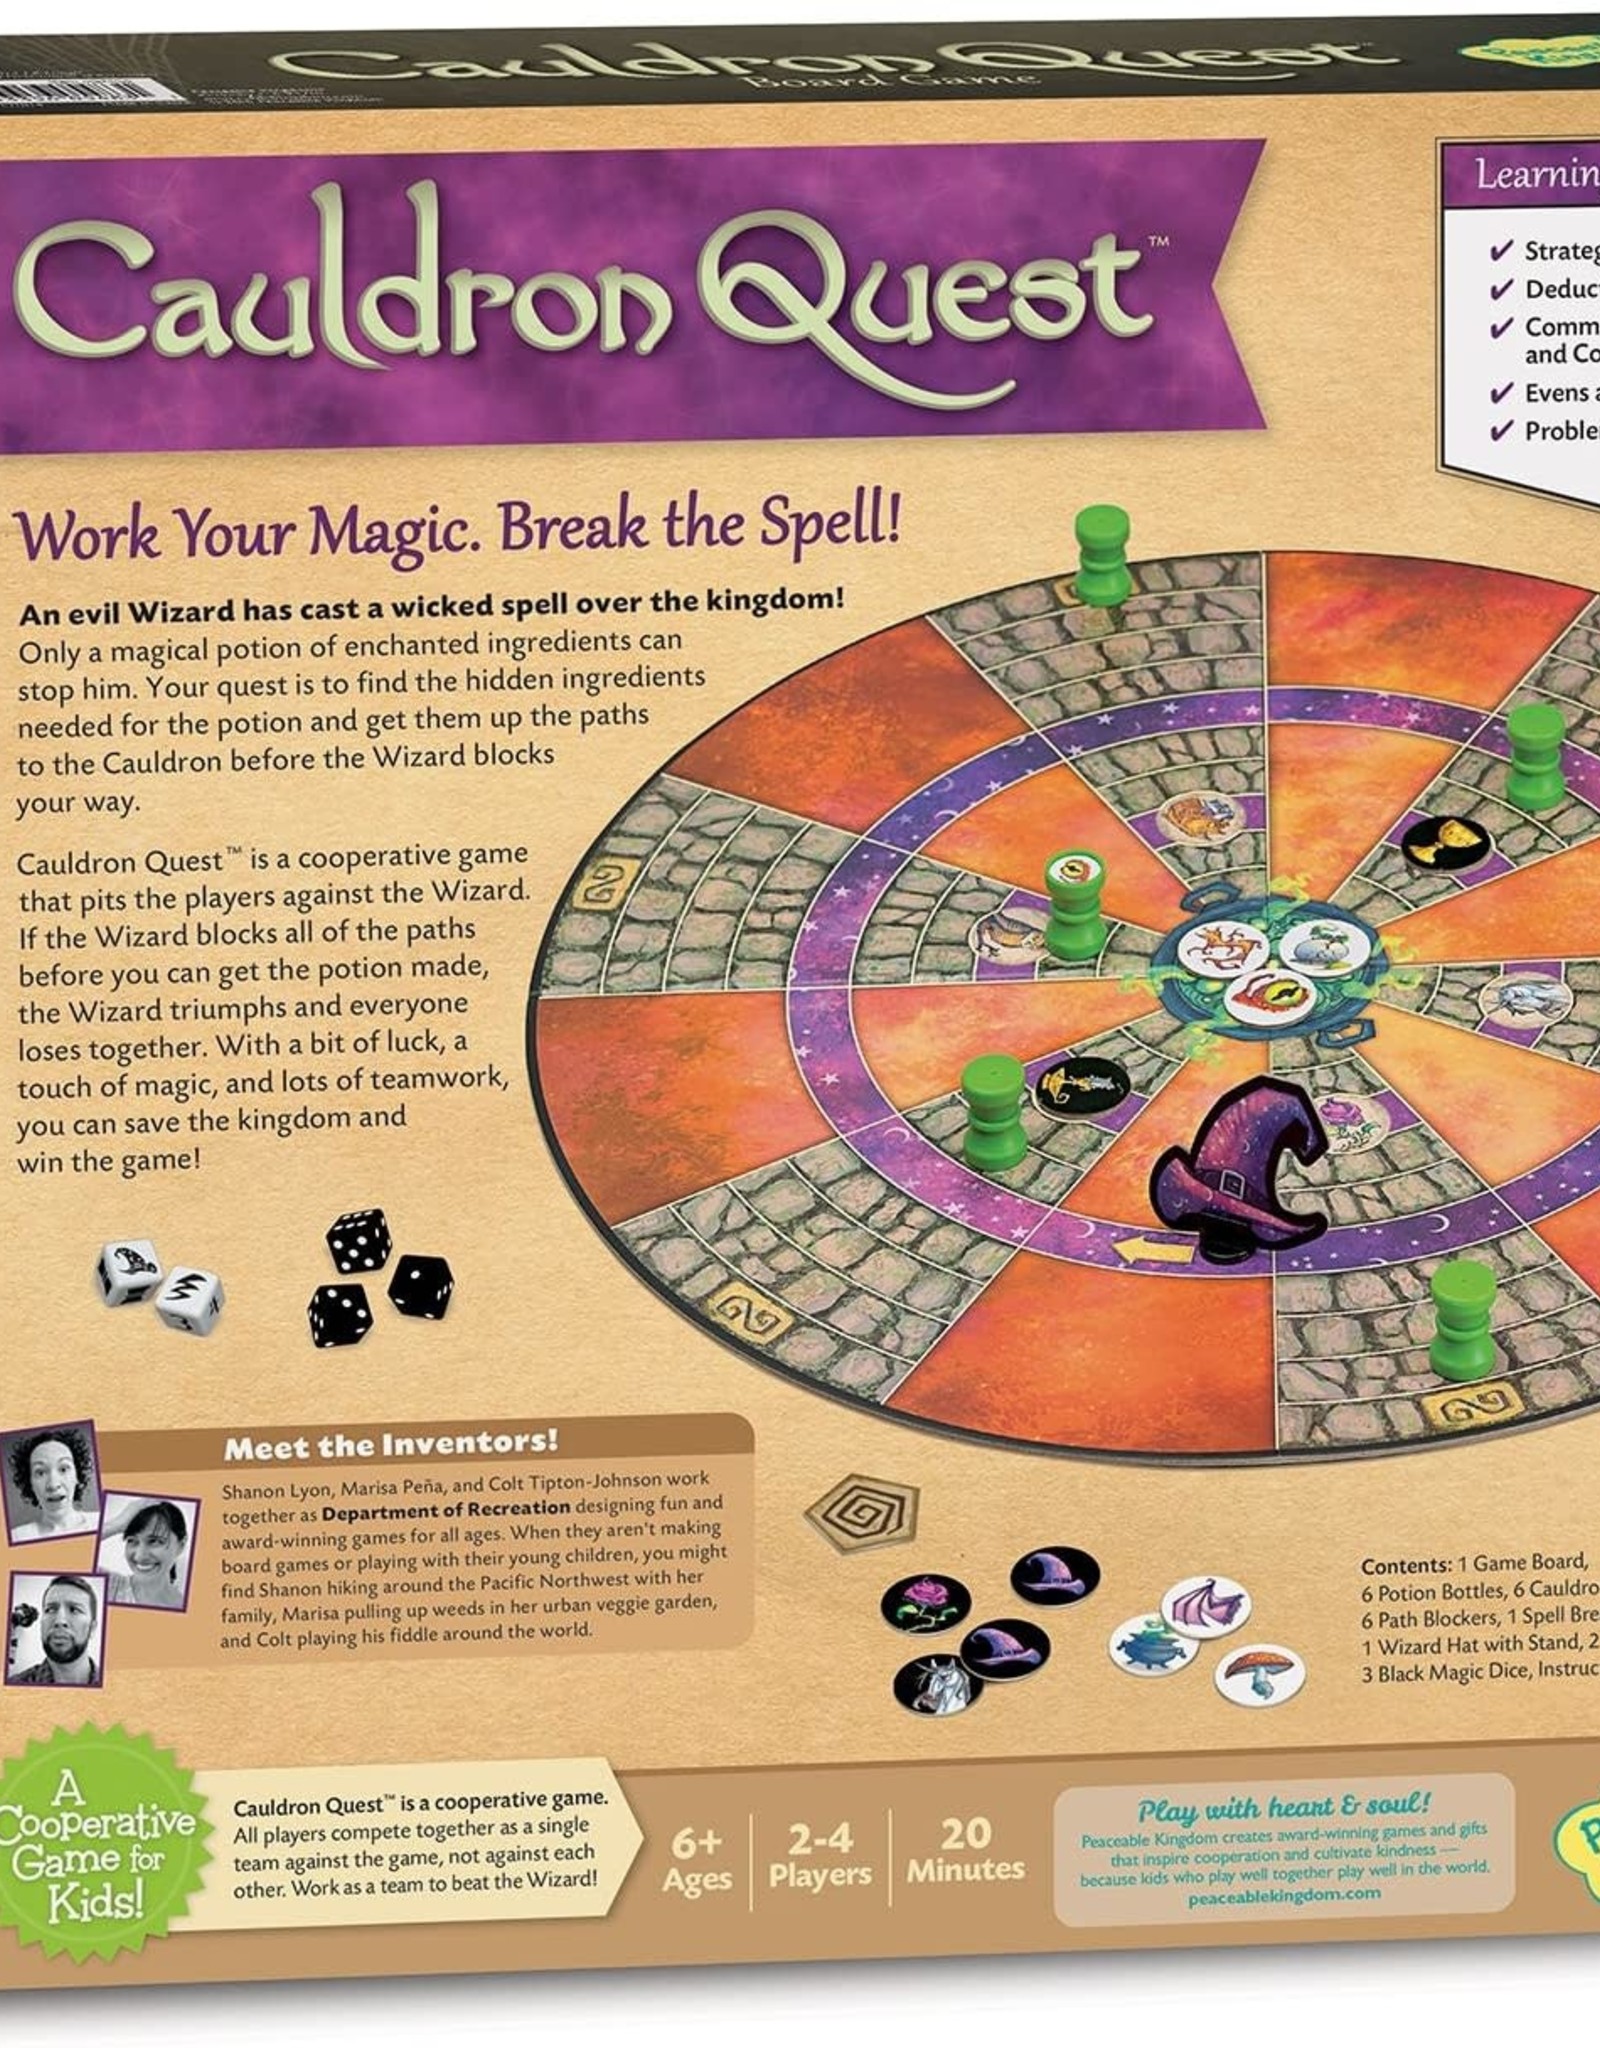 Peaceable Kingdom Cauldron Quest